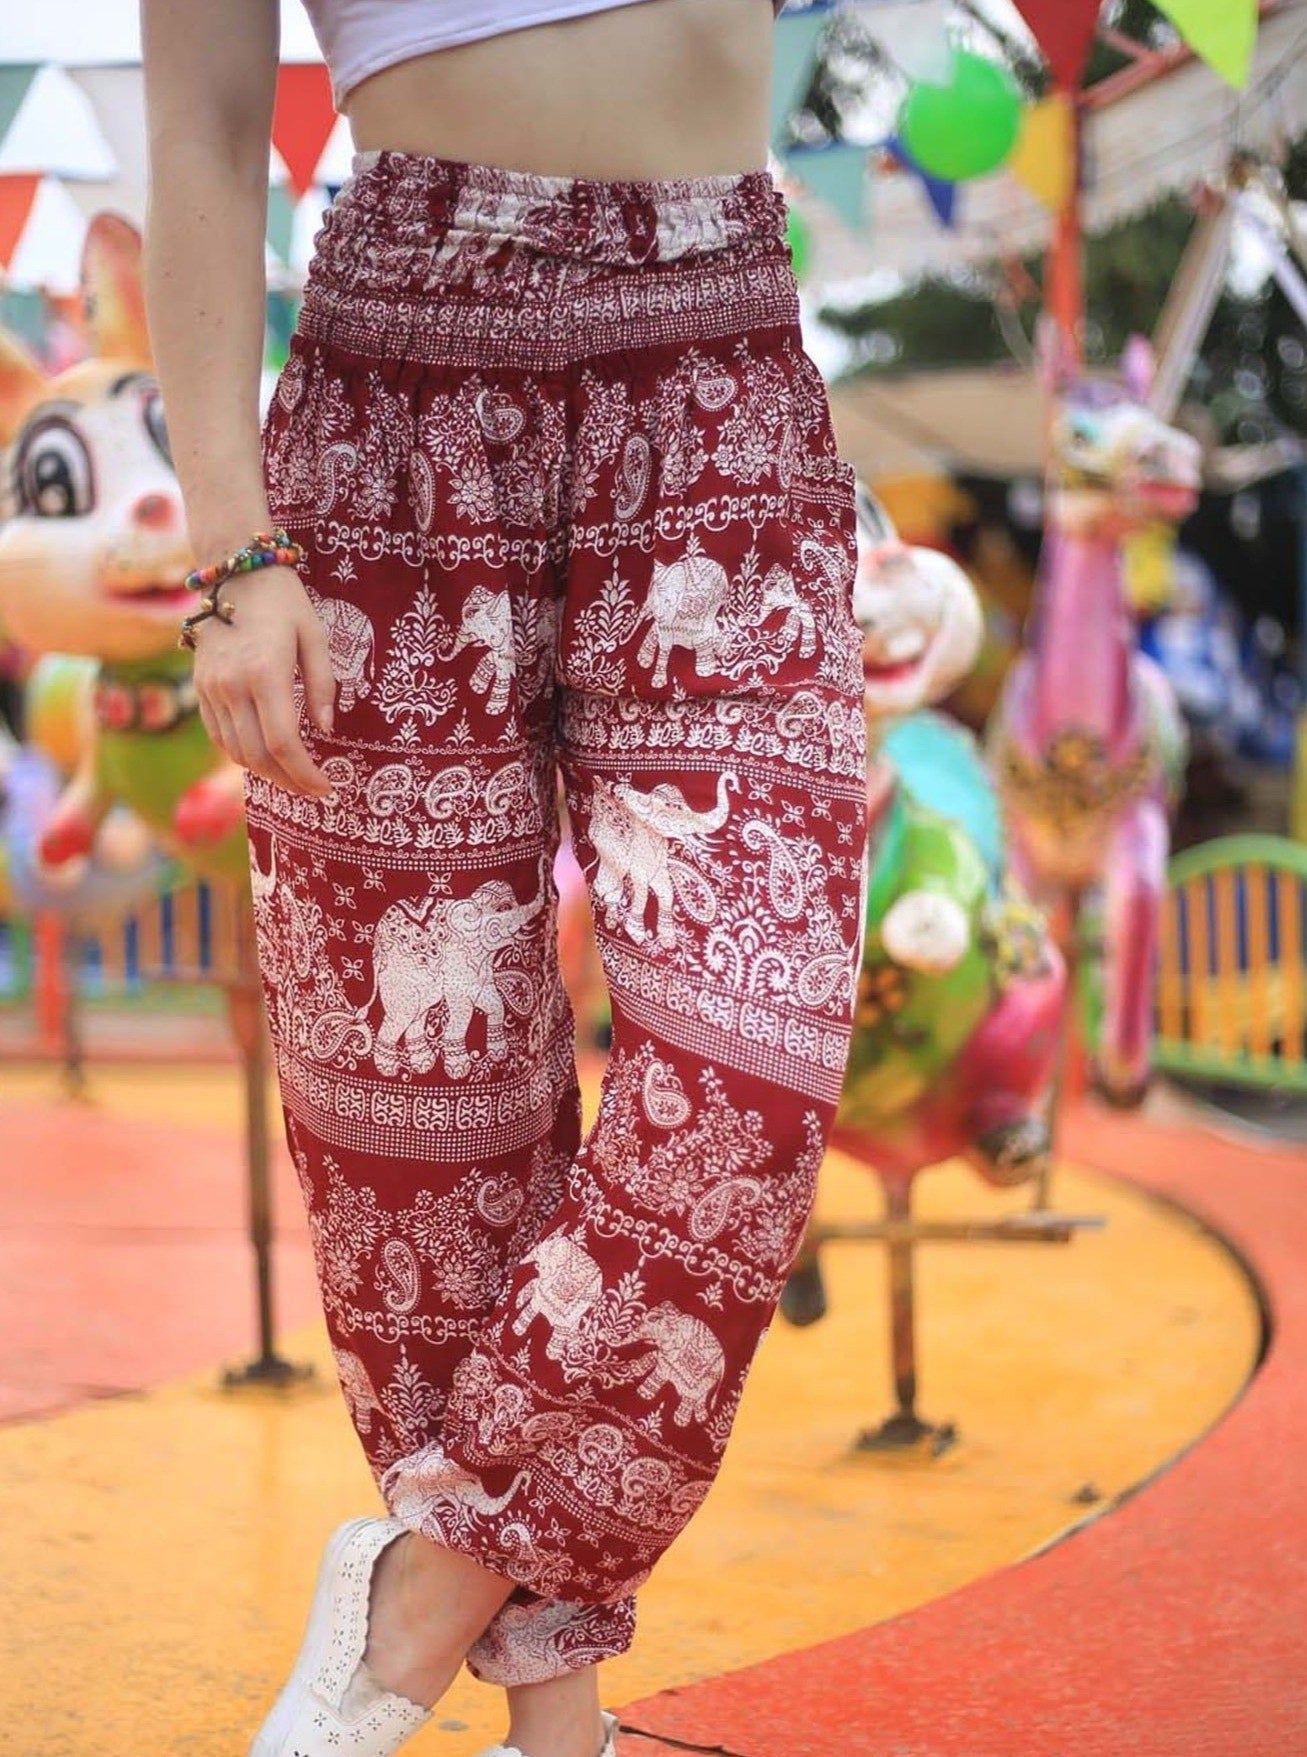 Classic Black Women's Elephant Pants - Thai Harem Pants - ActiveRoots